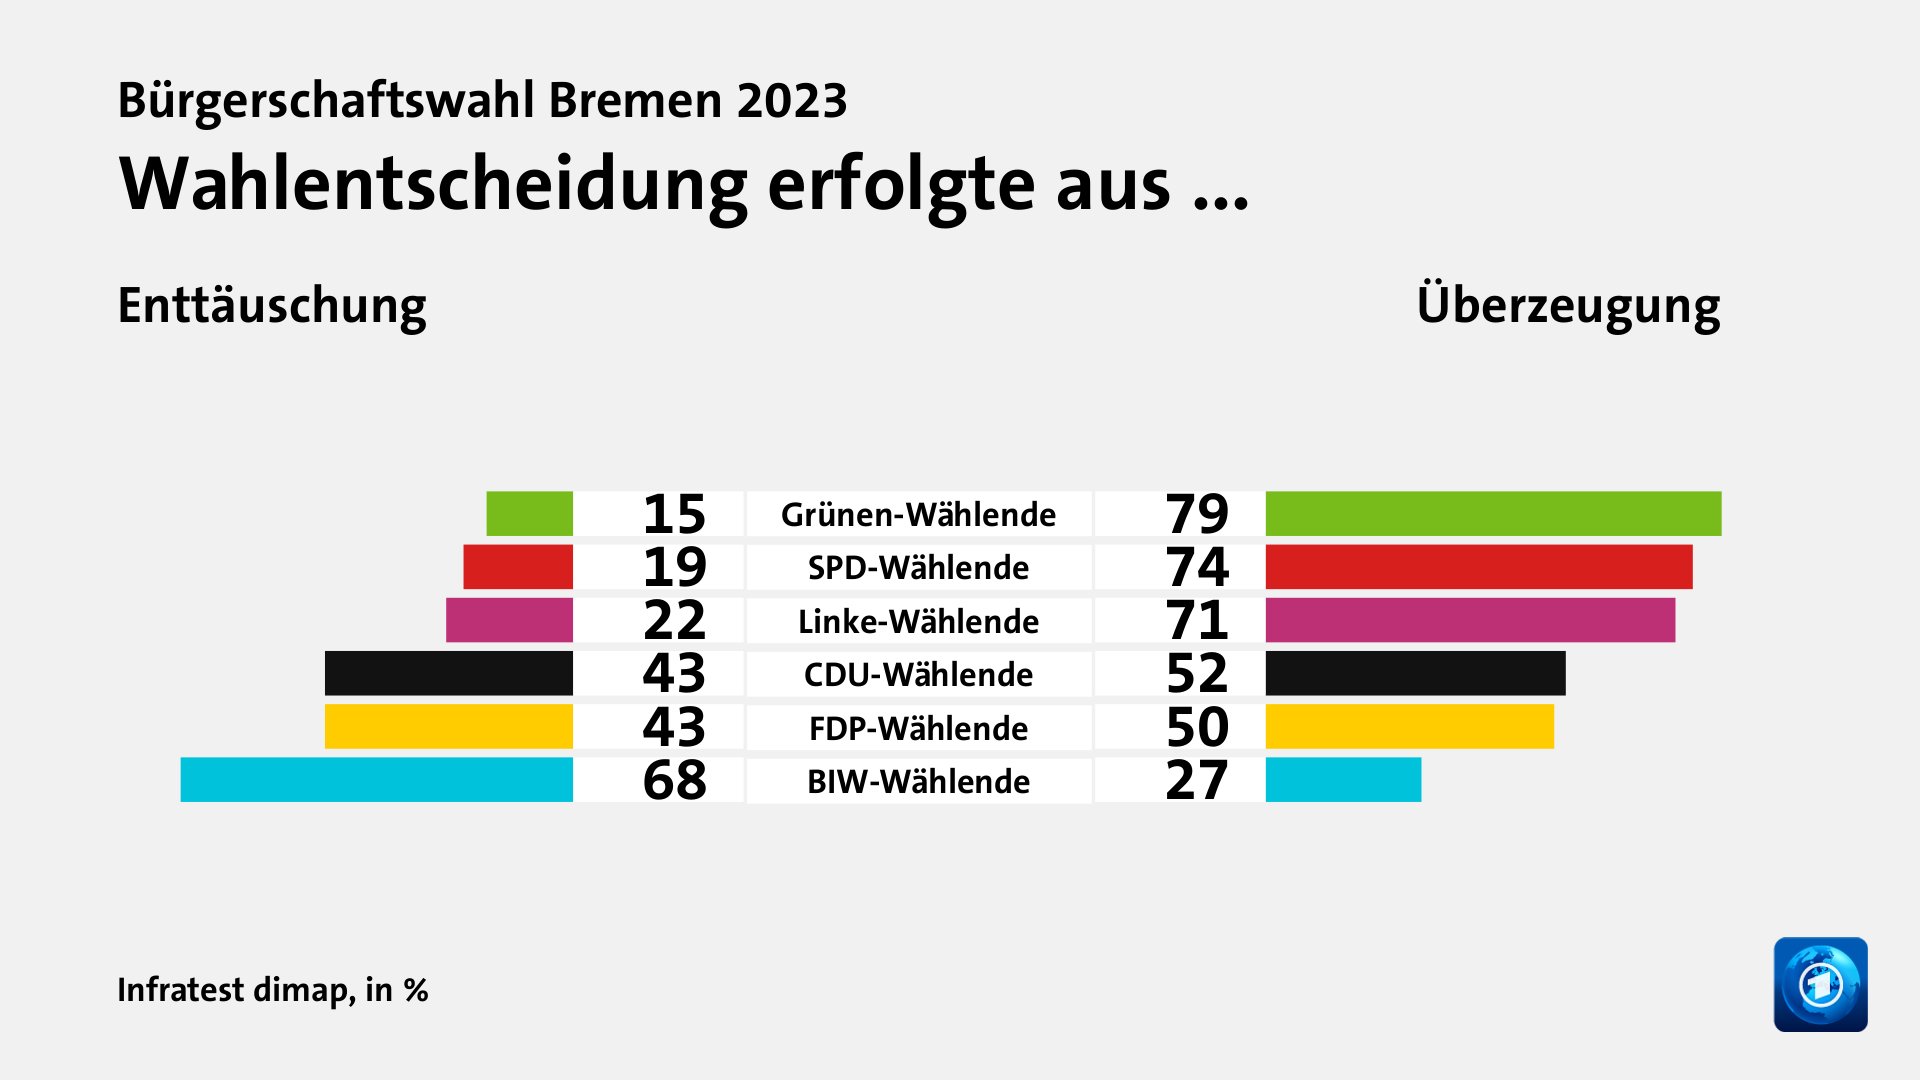 Wahlentscheidung erfolgte aus ... (in %) Grünen-Wählende: Enttäuschung 15, Überzeugung 79; SPD-Wählende: Enttäuschung 19, Überzeugung 74; Linke-Wählende: Enttäuschung 22, Überzeugung 71; CDU-Wählende: Enttäuschung 43, Überzeugung 52; FDP-Wählende: Enttäuschung 43, Überzeugung 50; BIW-Wählende: Enttäuschung 68, Überzeugung 27; Quelle: Infratest dimap